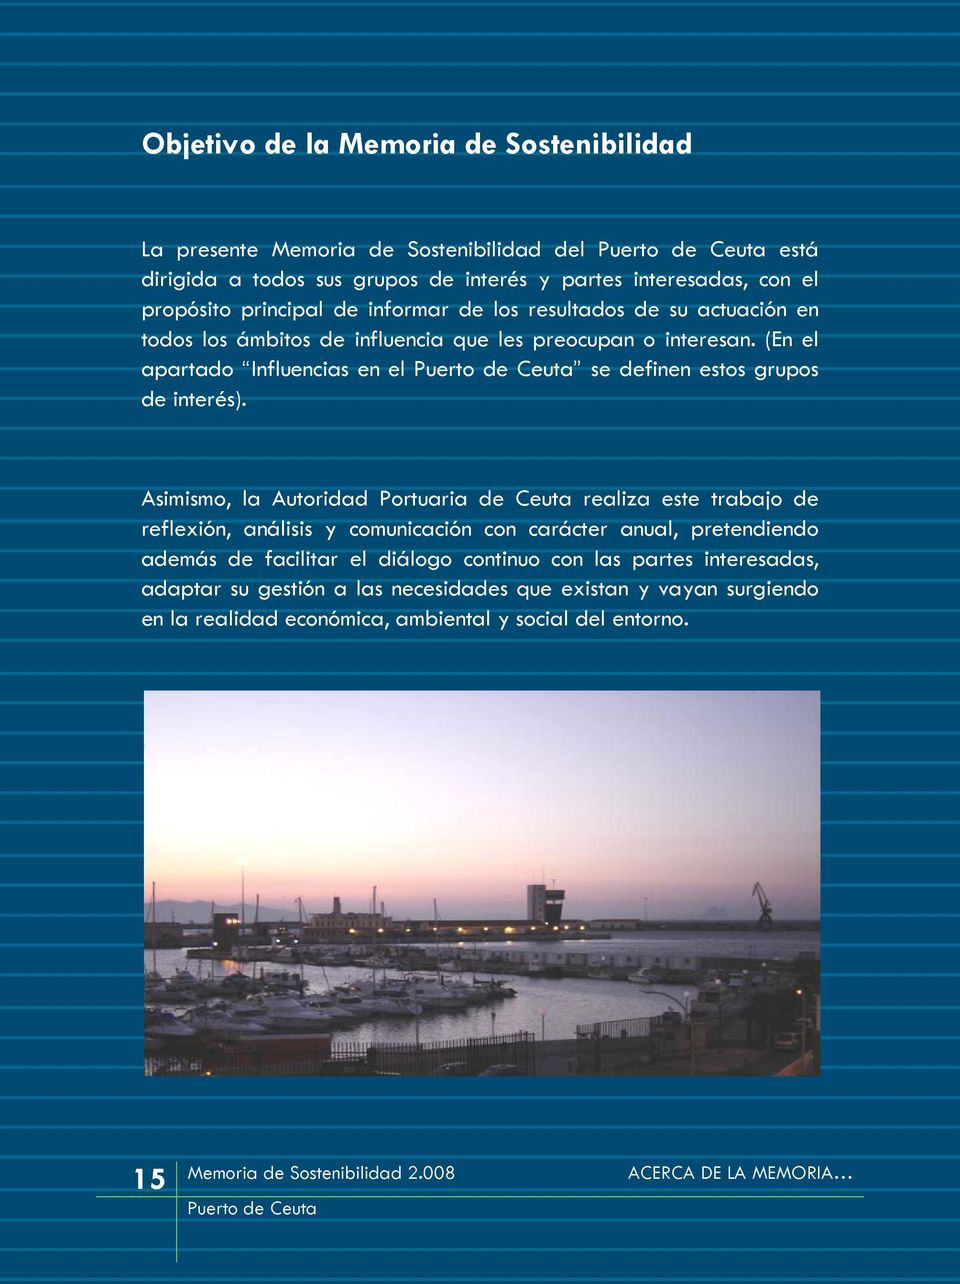 Asimismo, la Autoridad Portuaria de Ceuta realiza este trabajo de reflexión, análisis y comunicación con carácter anual, pretendiendo además de facilitar el diálogo continuo con las